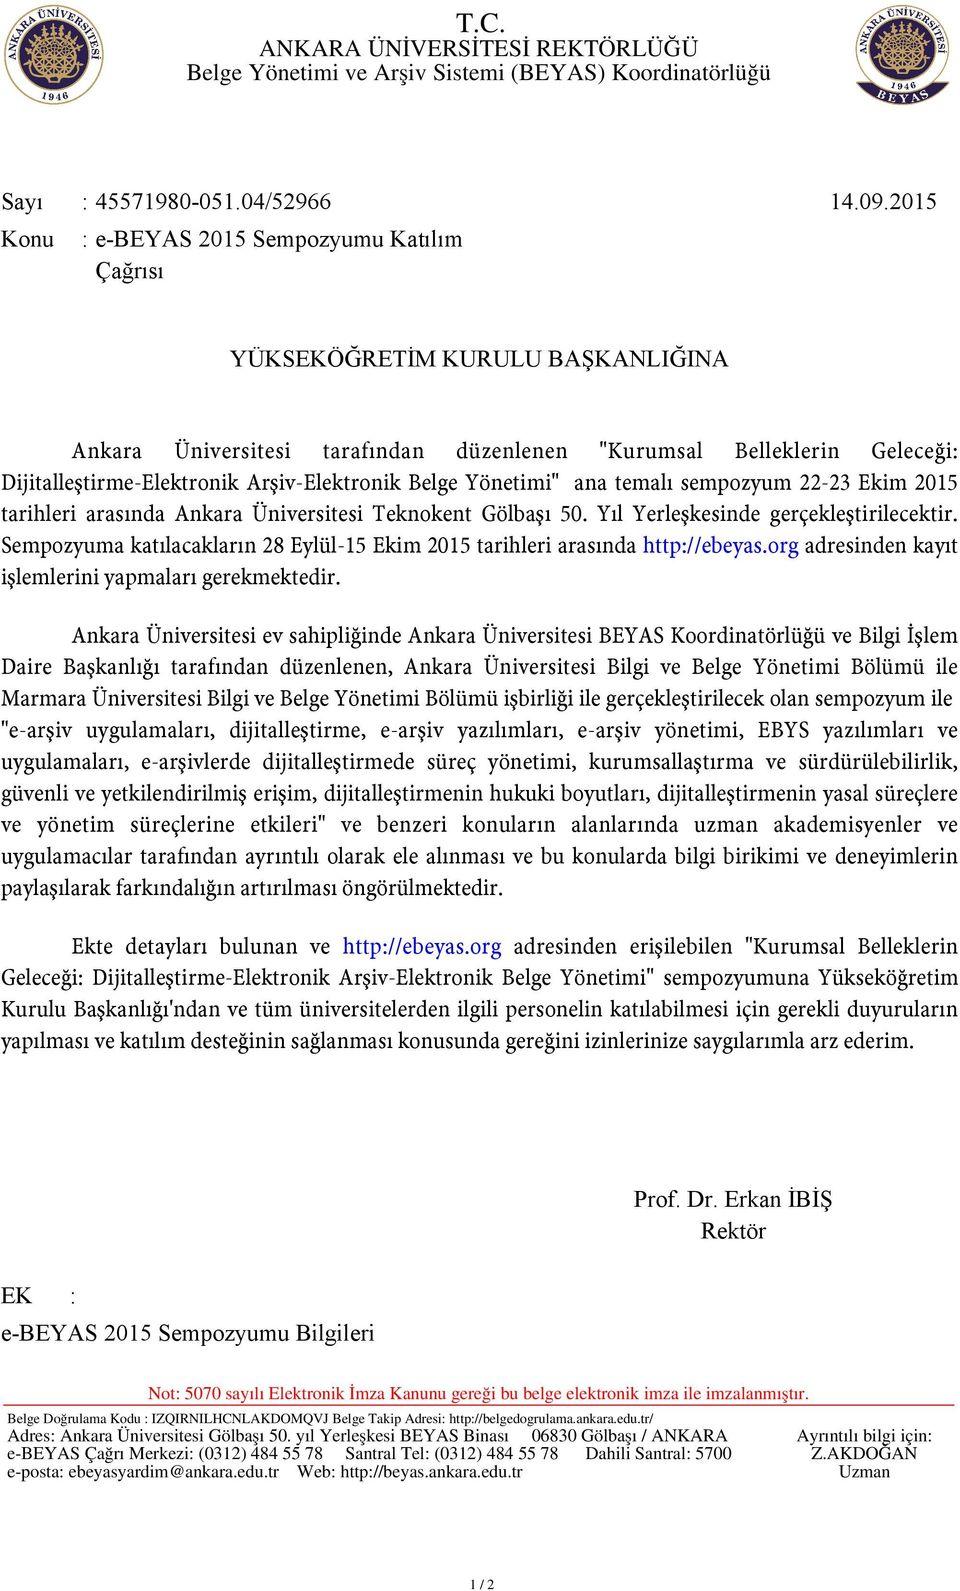 Arşiv-Elektronik Belge Yönetimi" ana temalı sempozyum 22-23 Ekim 2015 tarihleri arasında Ankara Üniversitesi Teknokent Gölbaşı 50. Yıl Yerleşkesinde gerçekleştirilecektir.